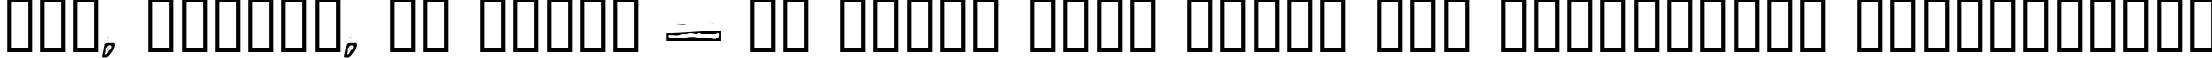 Пример написания шрифтом LogJam Inline текста на украинском